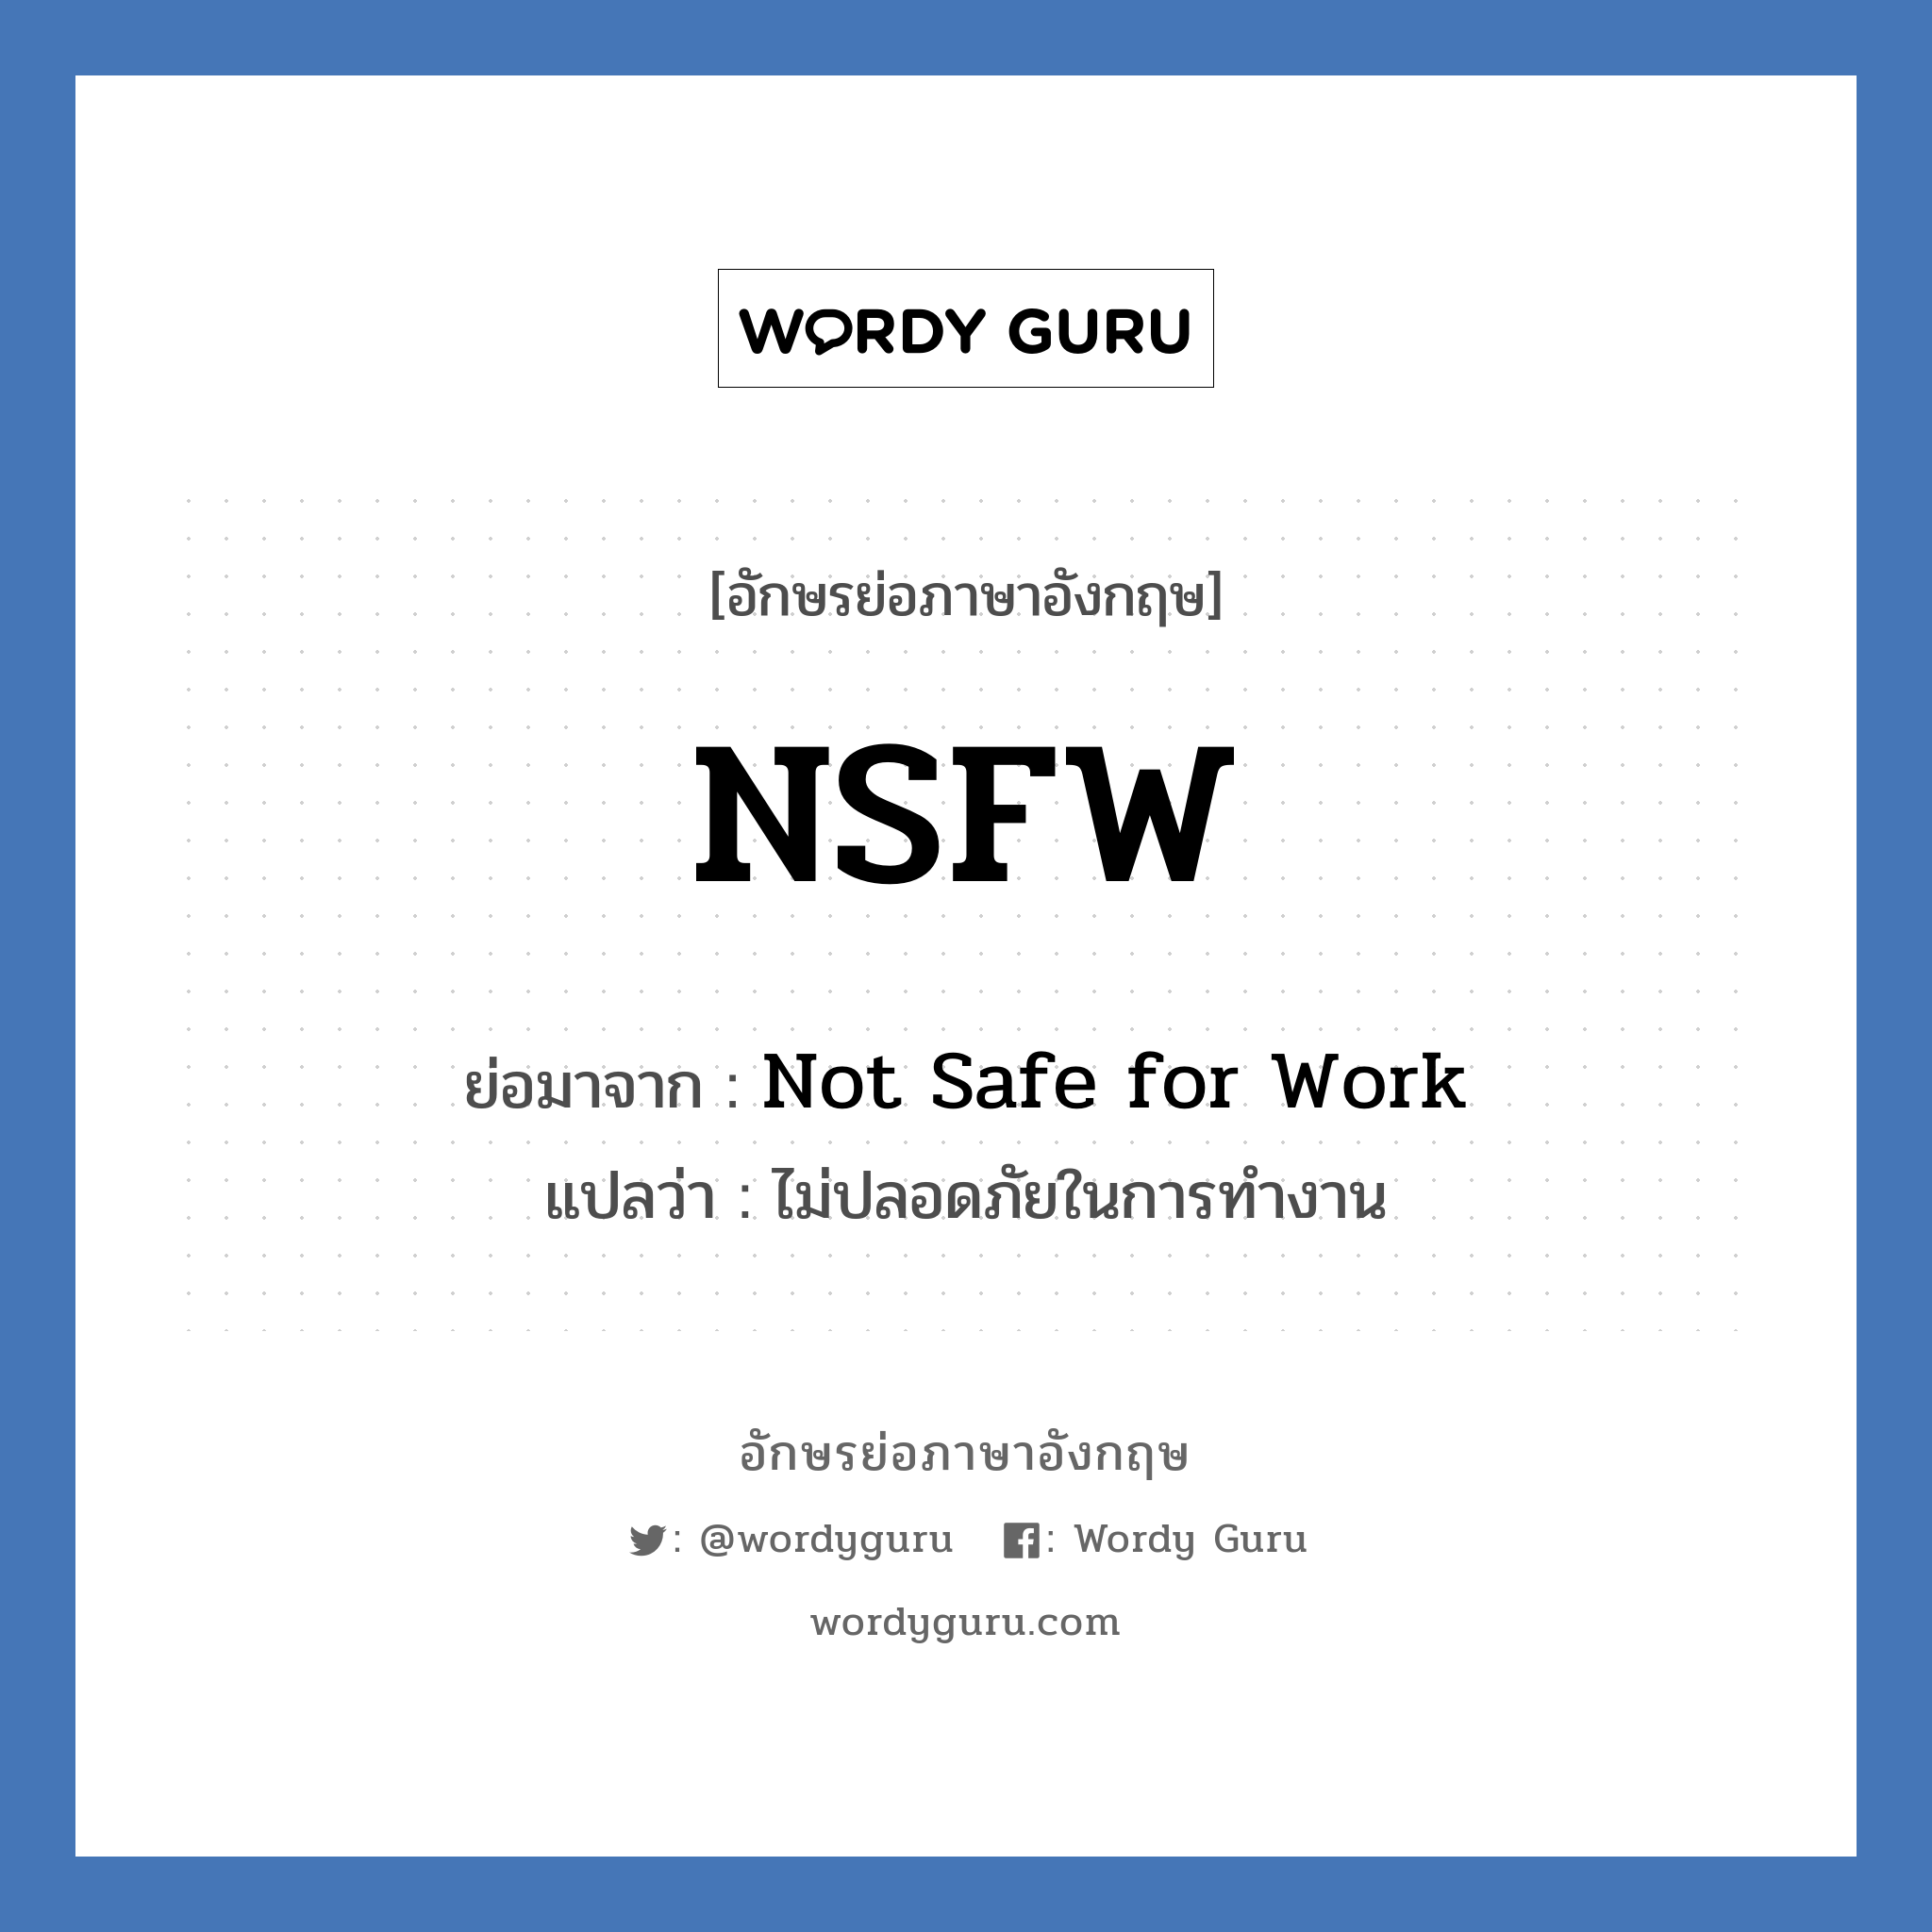 Not Safe for Work คำย่อคือ? แปลว่า?, อักษรย่อภาษาอังกฤษ Not Safe for Work ย่อมาจาก NSFW แปลว่า ไม่ปลอดภัยในการทำงาน